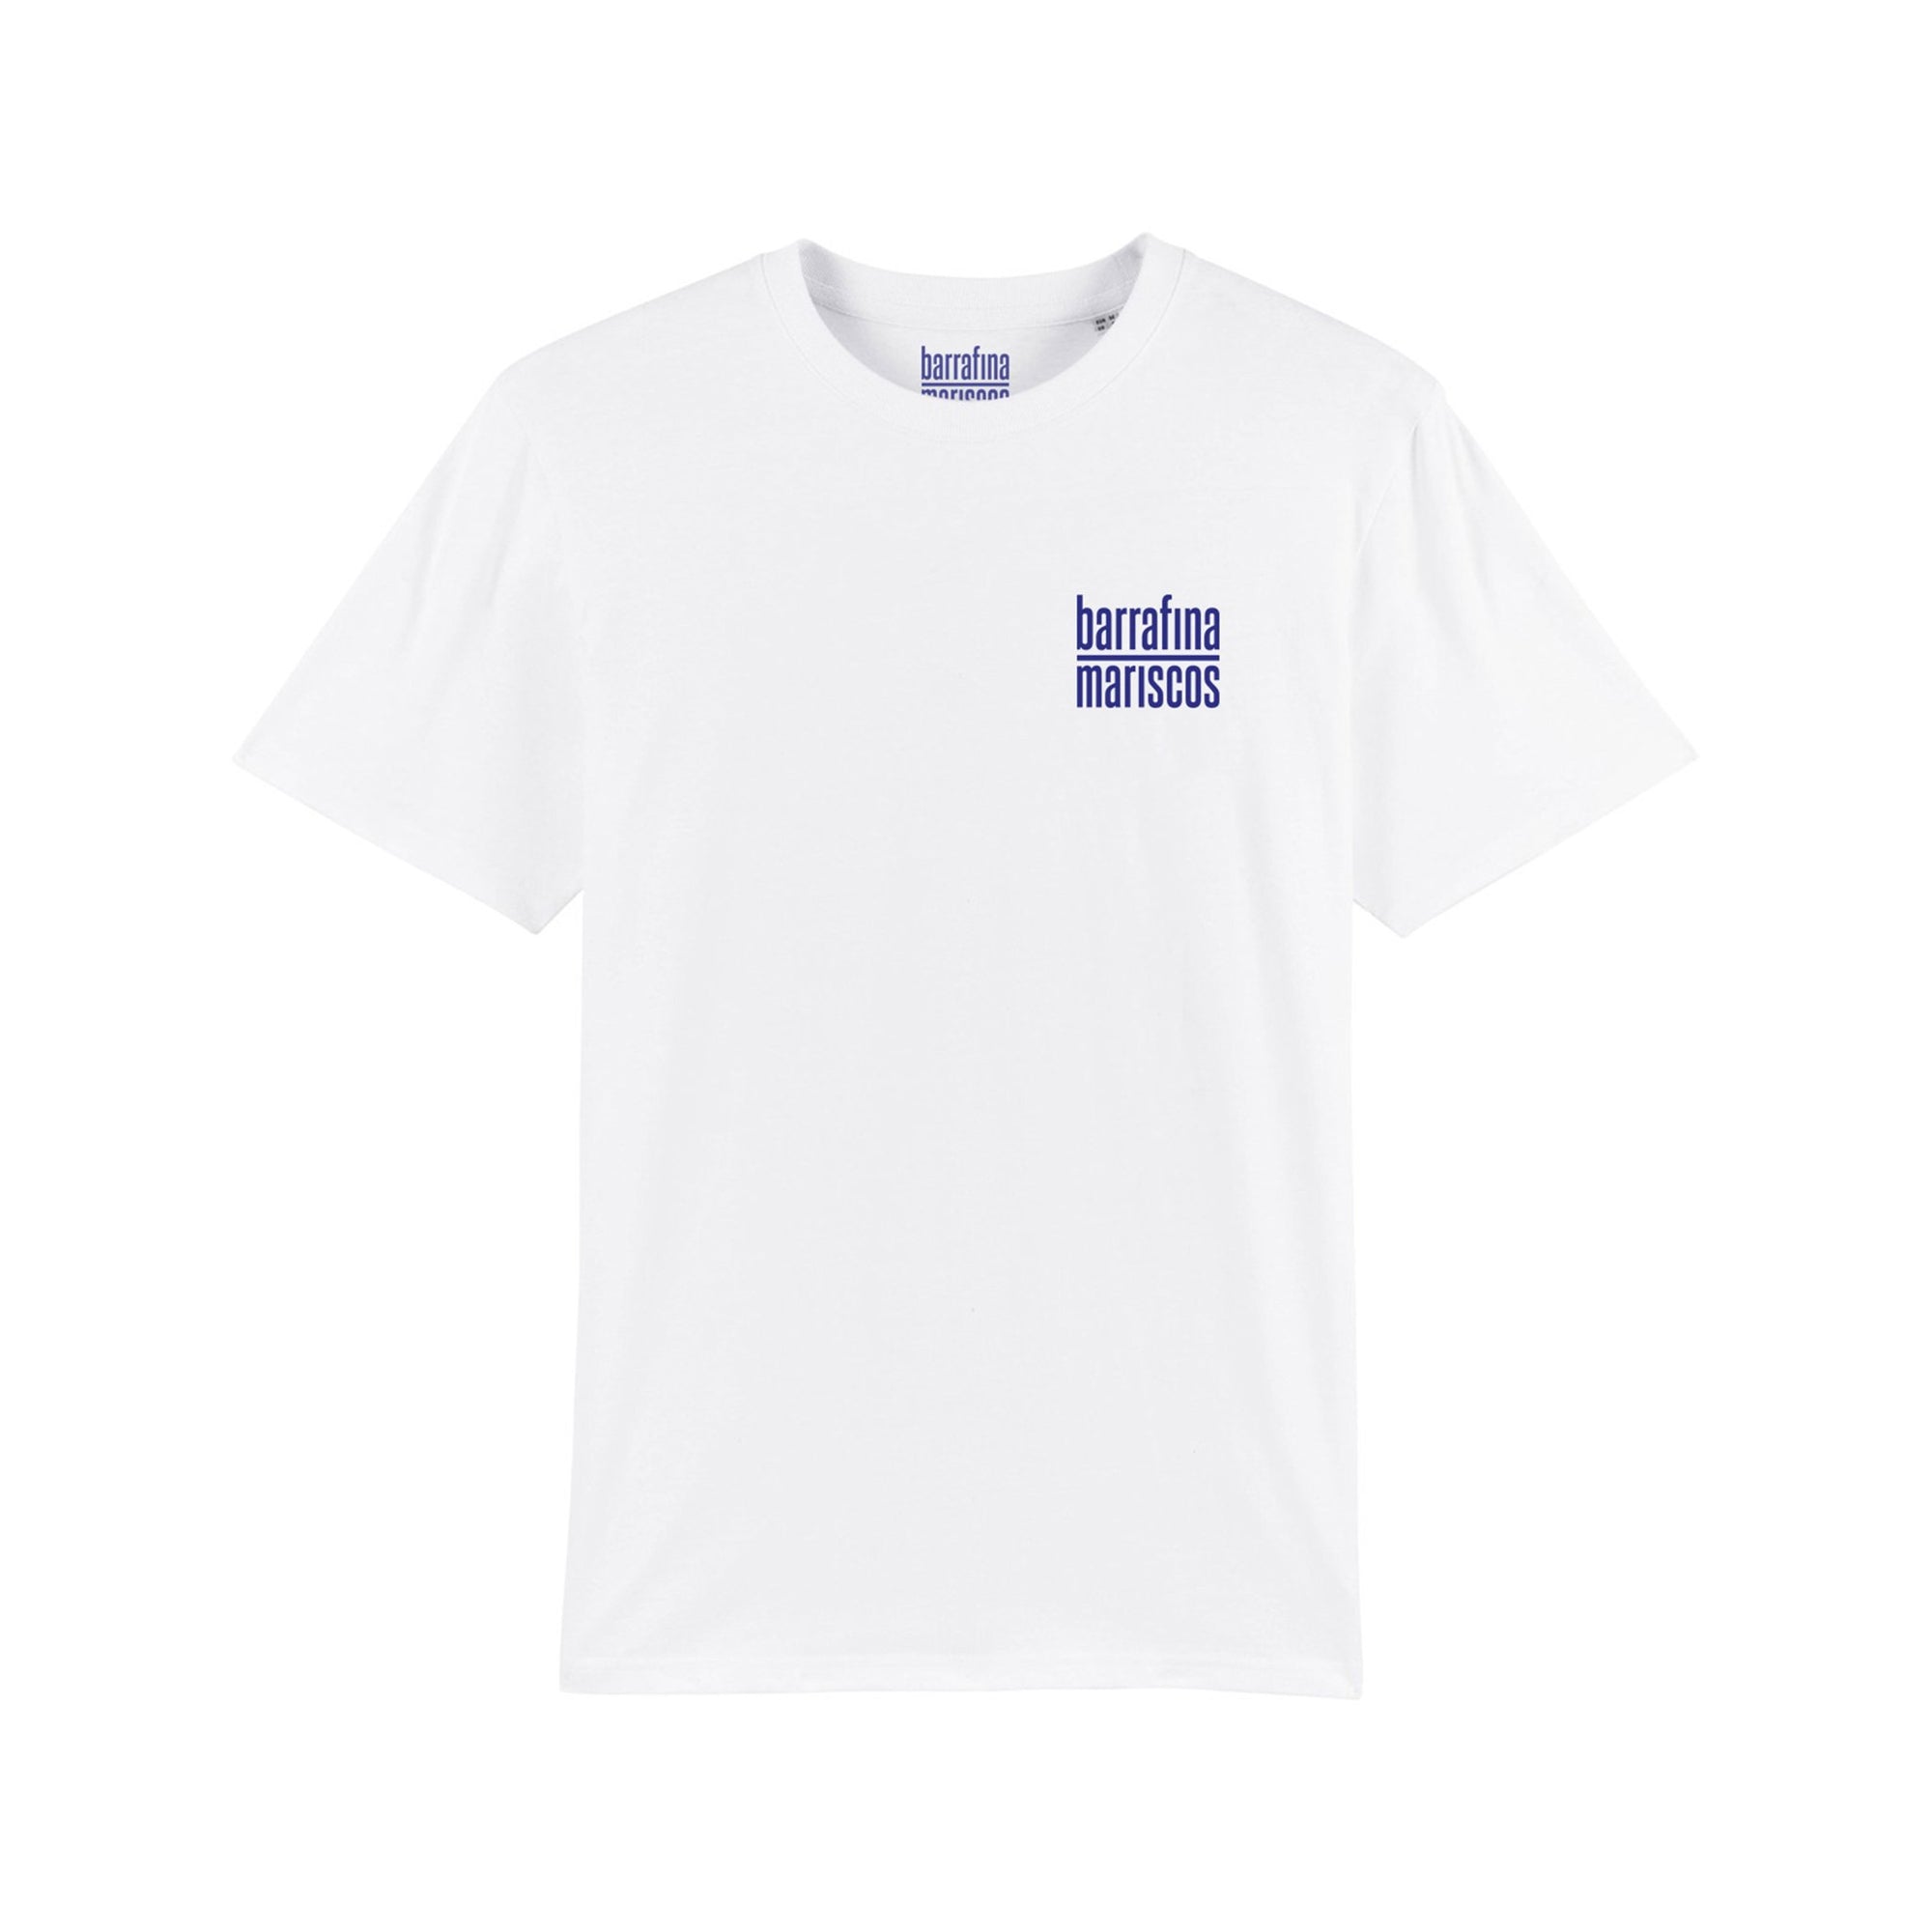 UJ Select x Barrafina Mariscos T-shirt – No Prawn